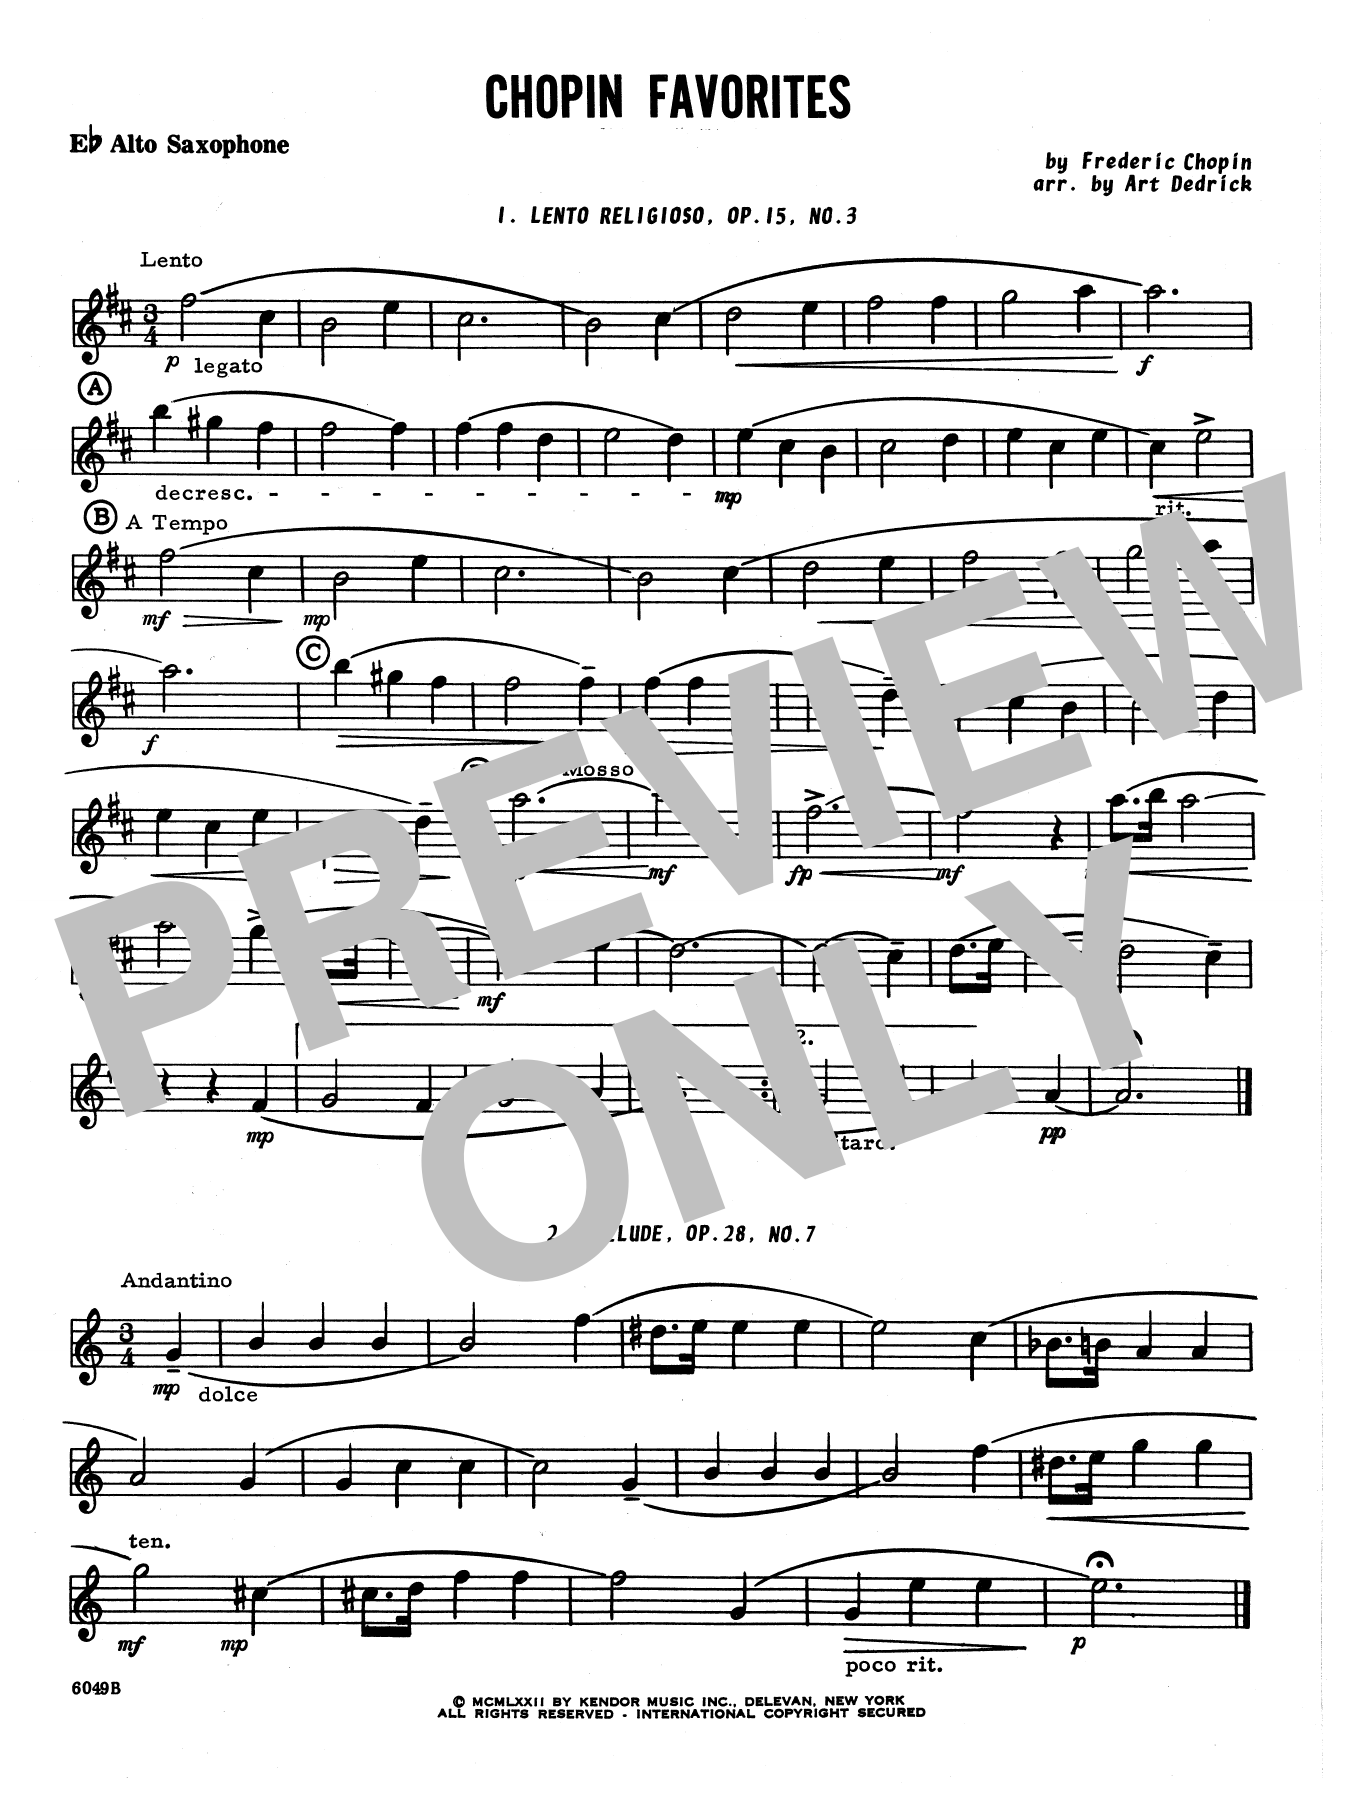 Art Dedrick Chopin Favorites - Eb Alto Saxophone sheet music notes and chords. Download Printable PDF.